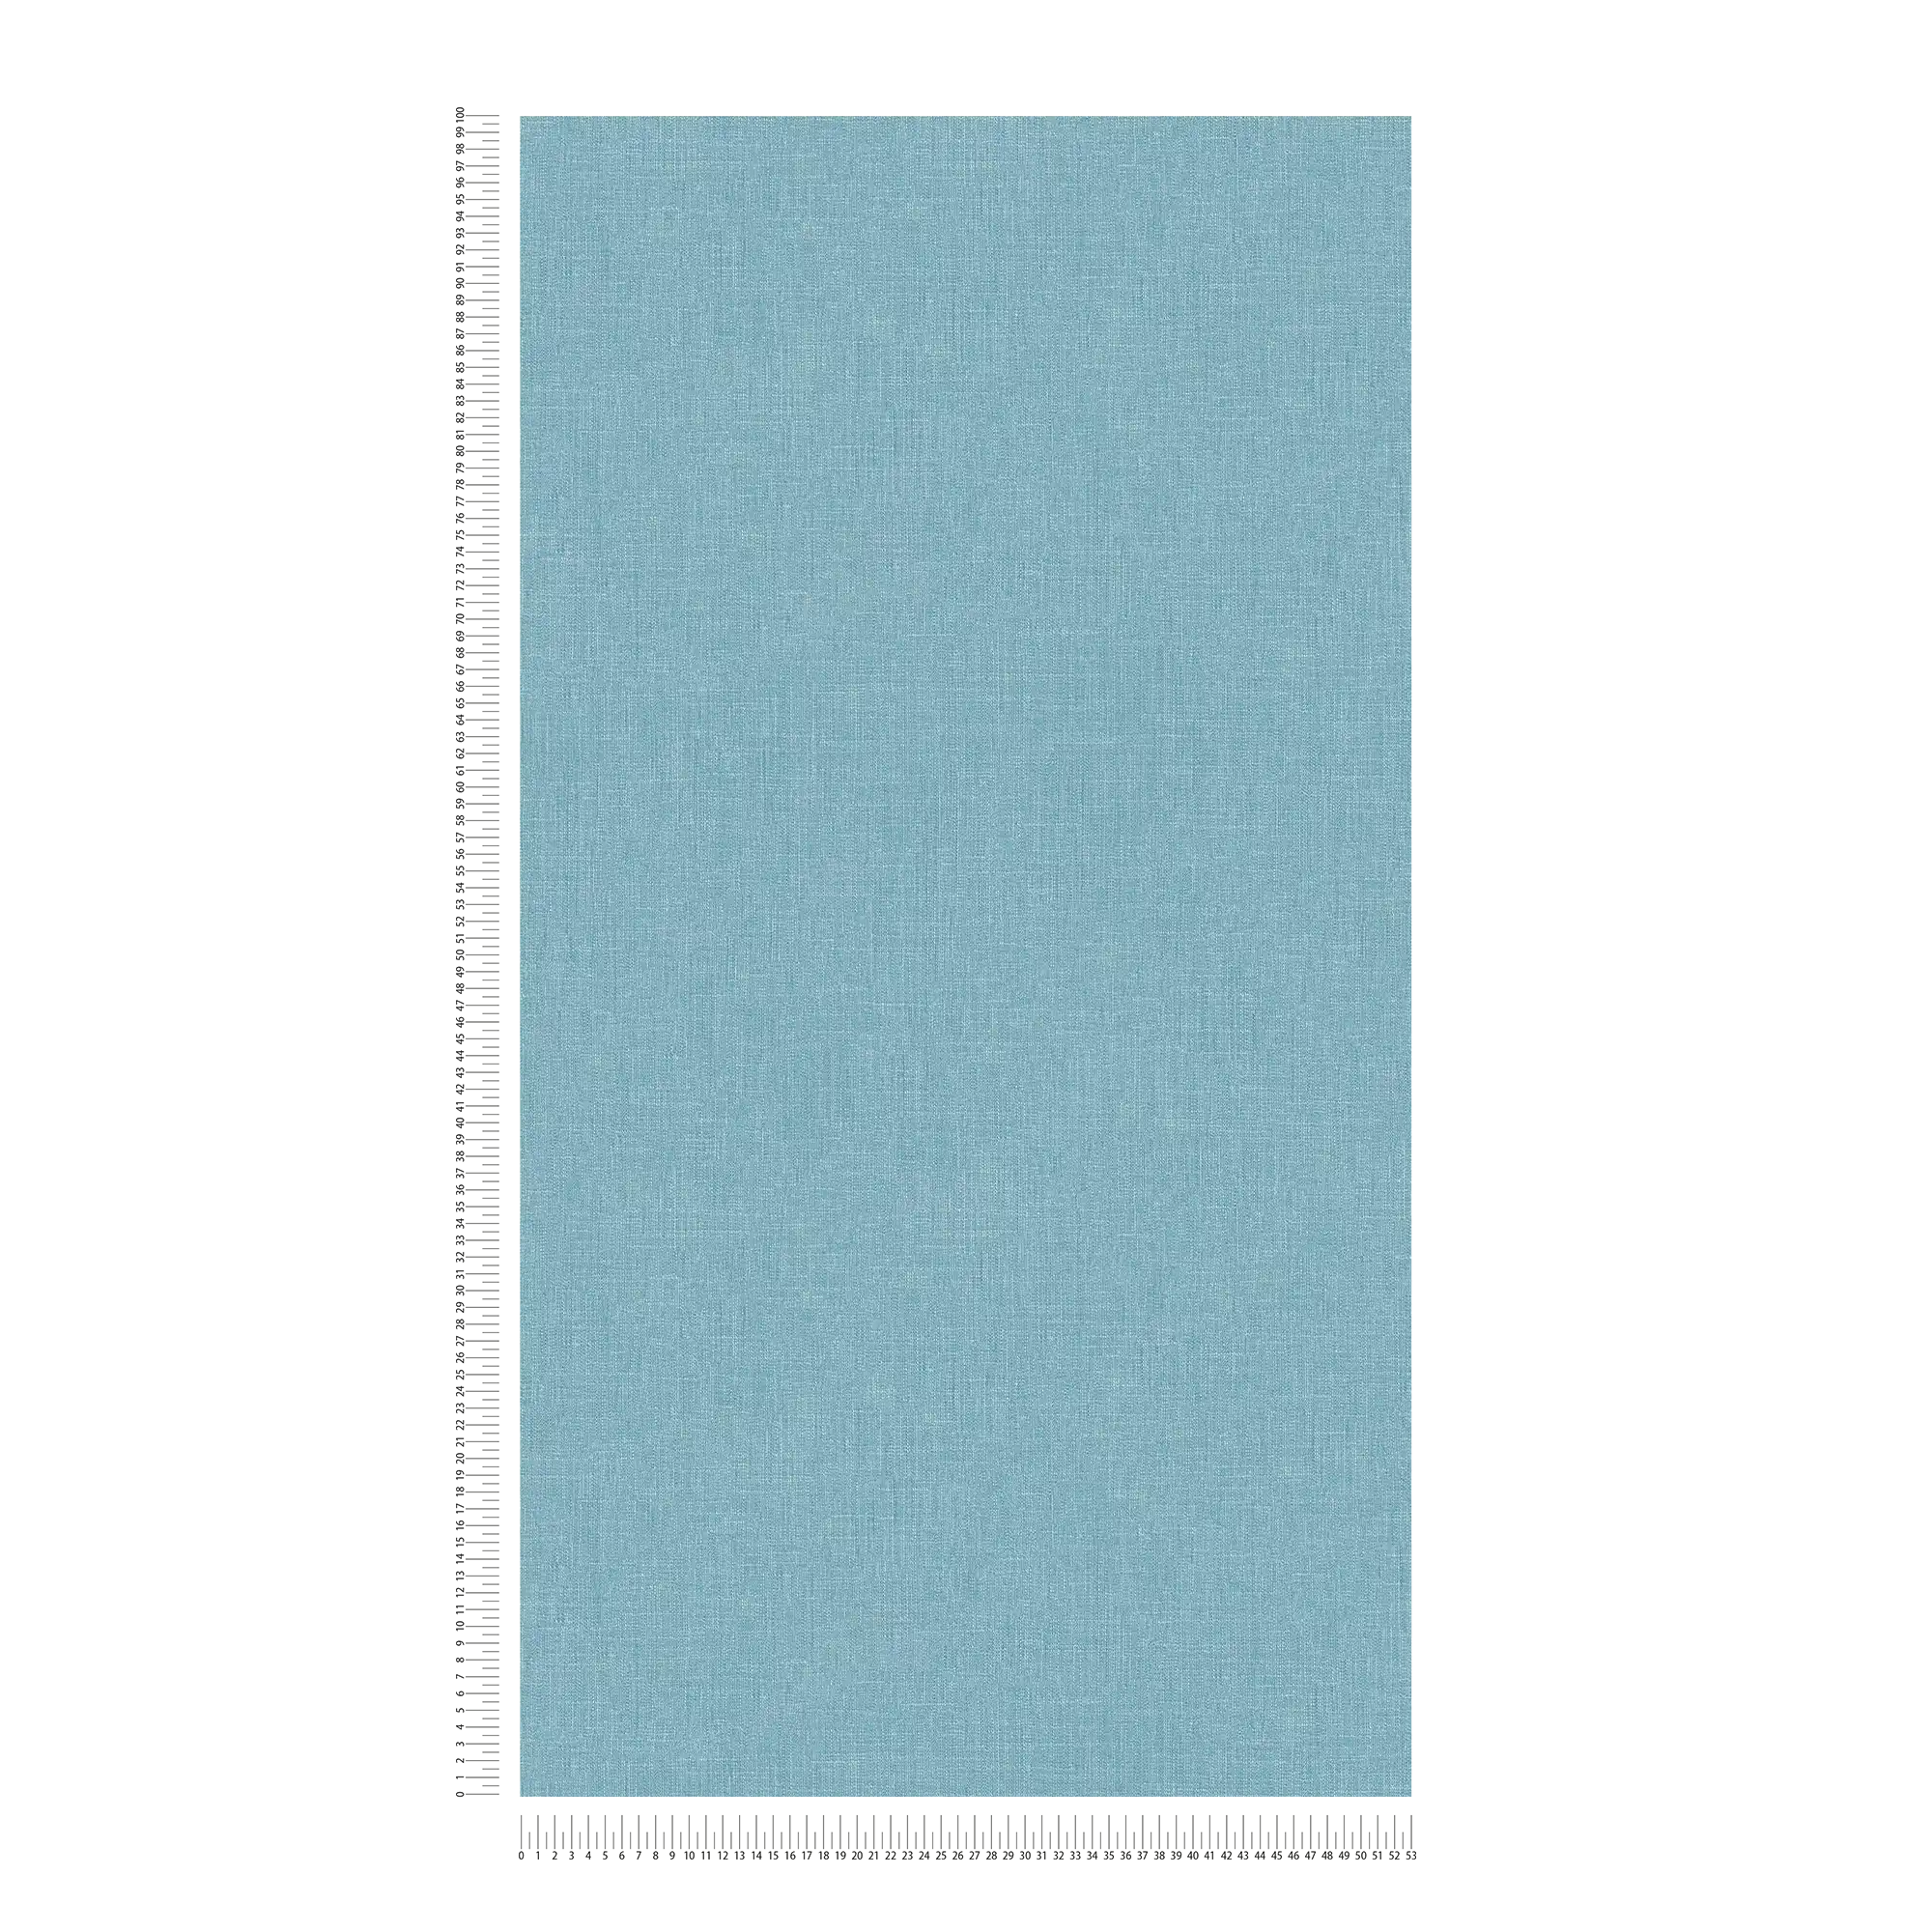             Papel pintado no tejido azul moteado con estructura textil en estilo bouclé
        